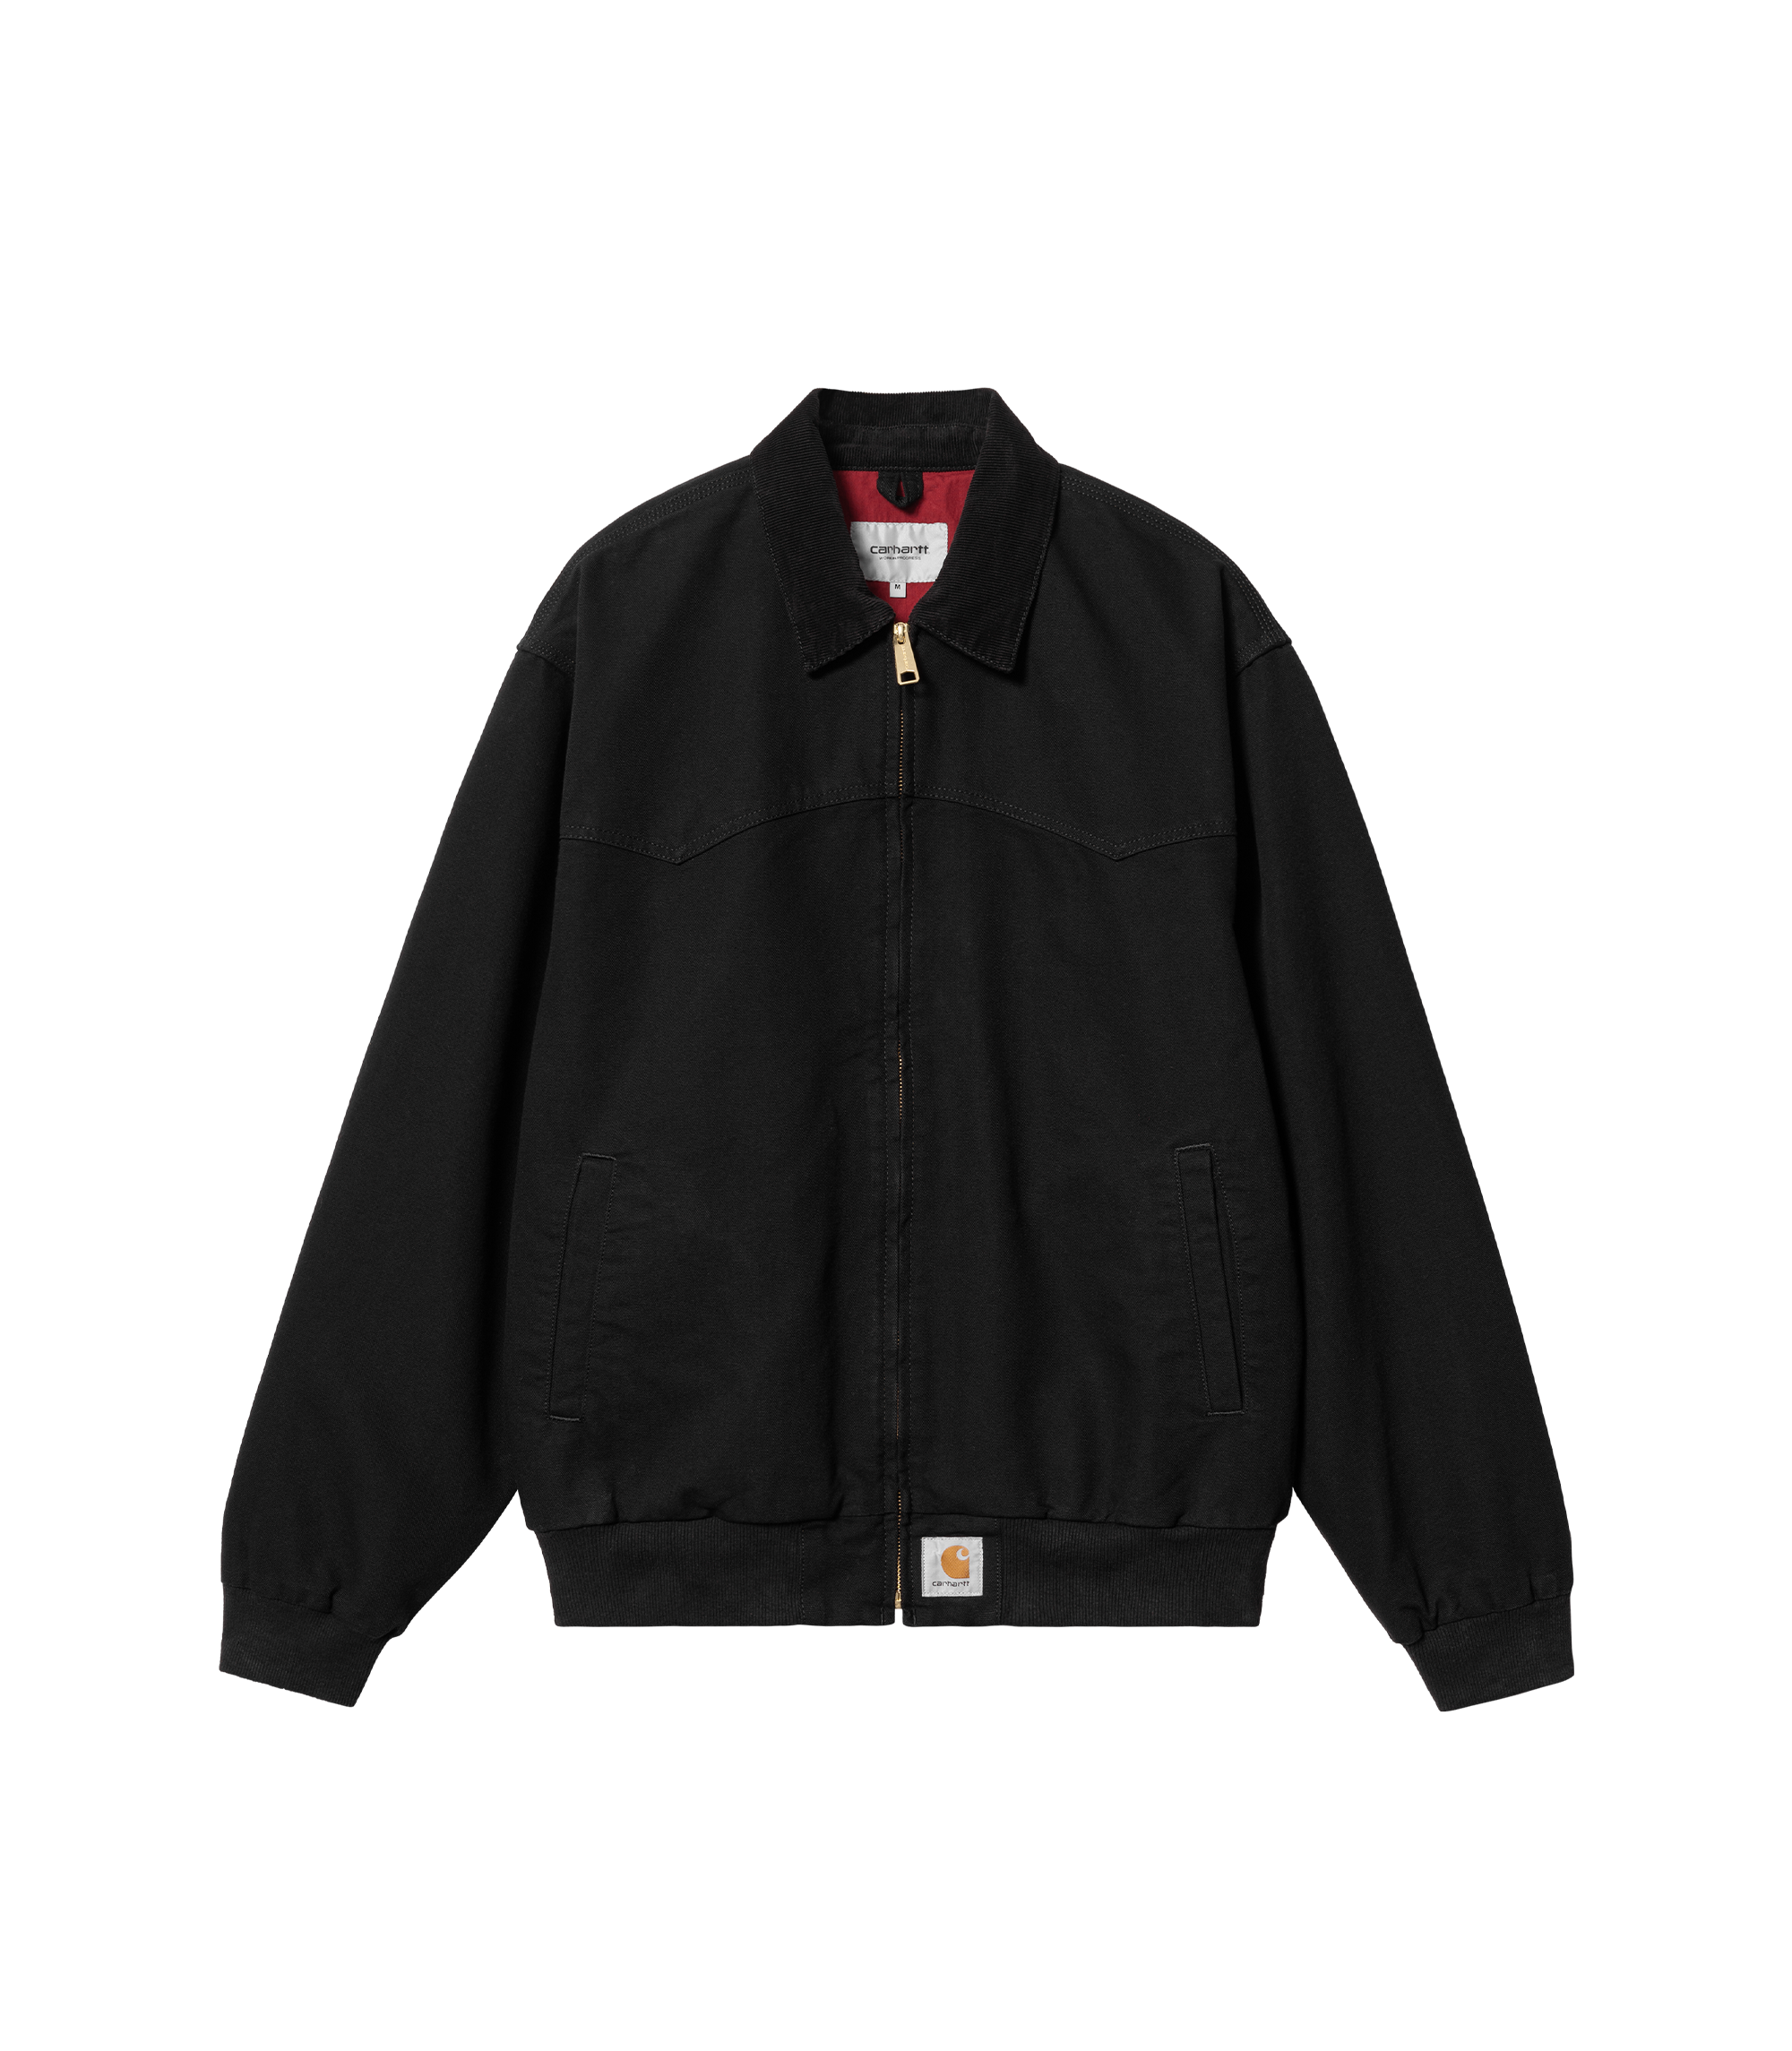 OG Santa Fe Jacket - Black